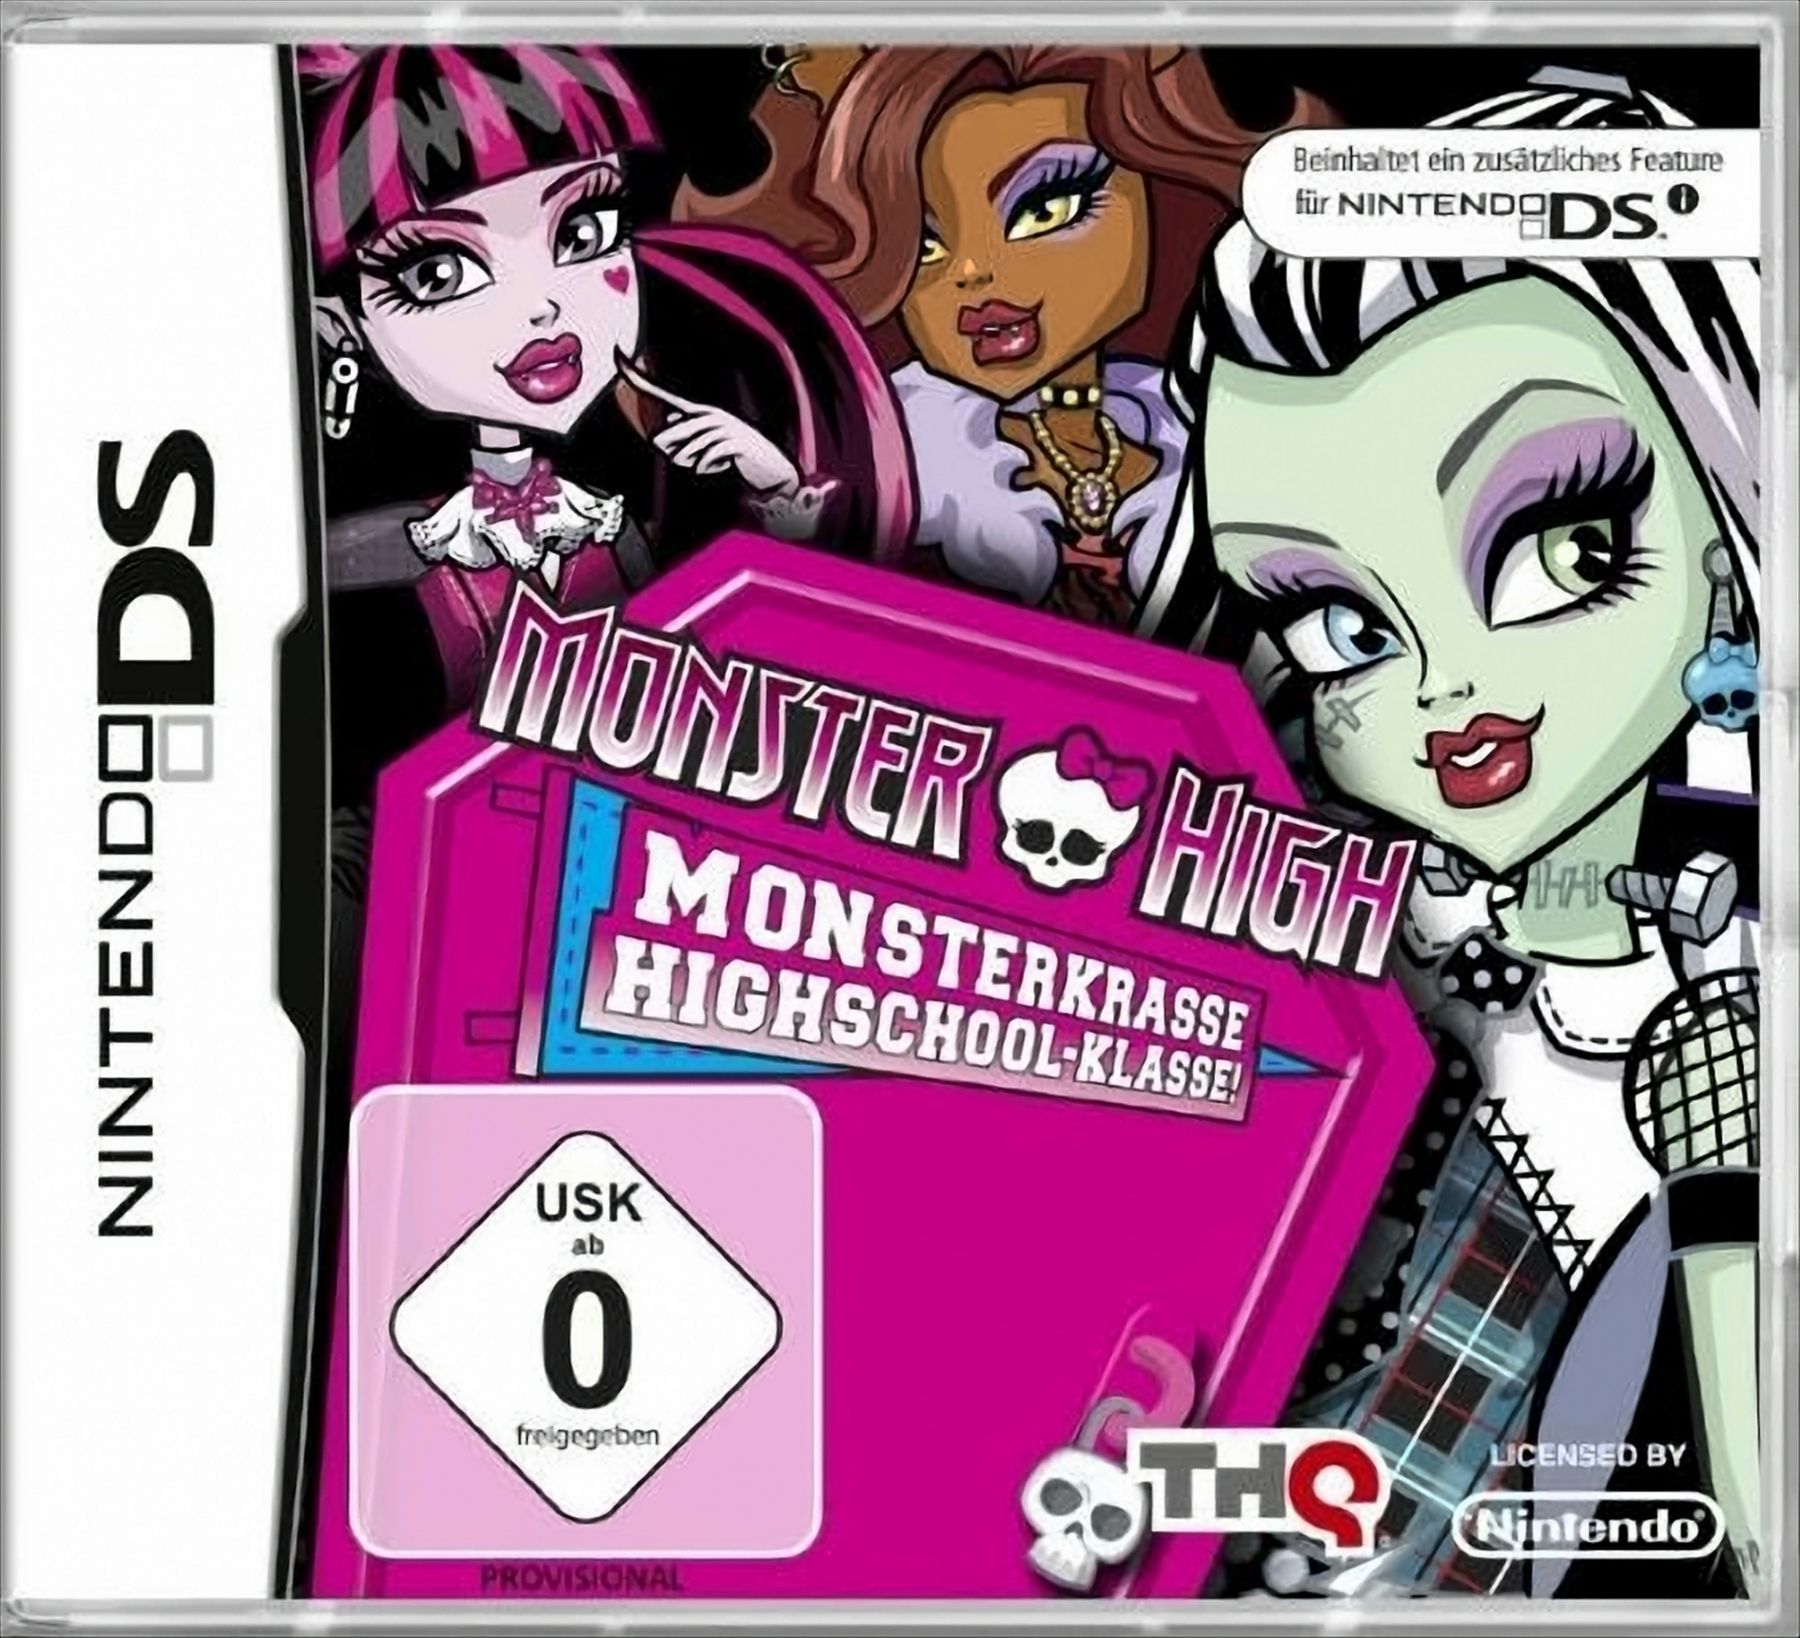 Monster High - Monsterkrasse Highschool-Klasse! - [Nintendo DS